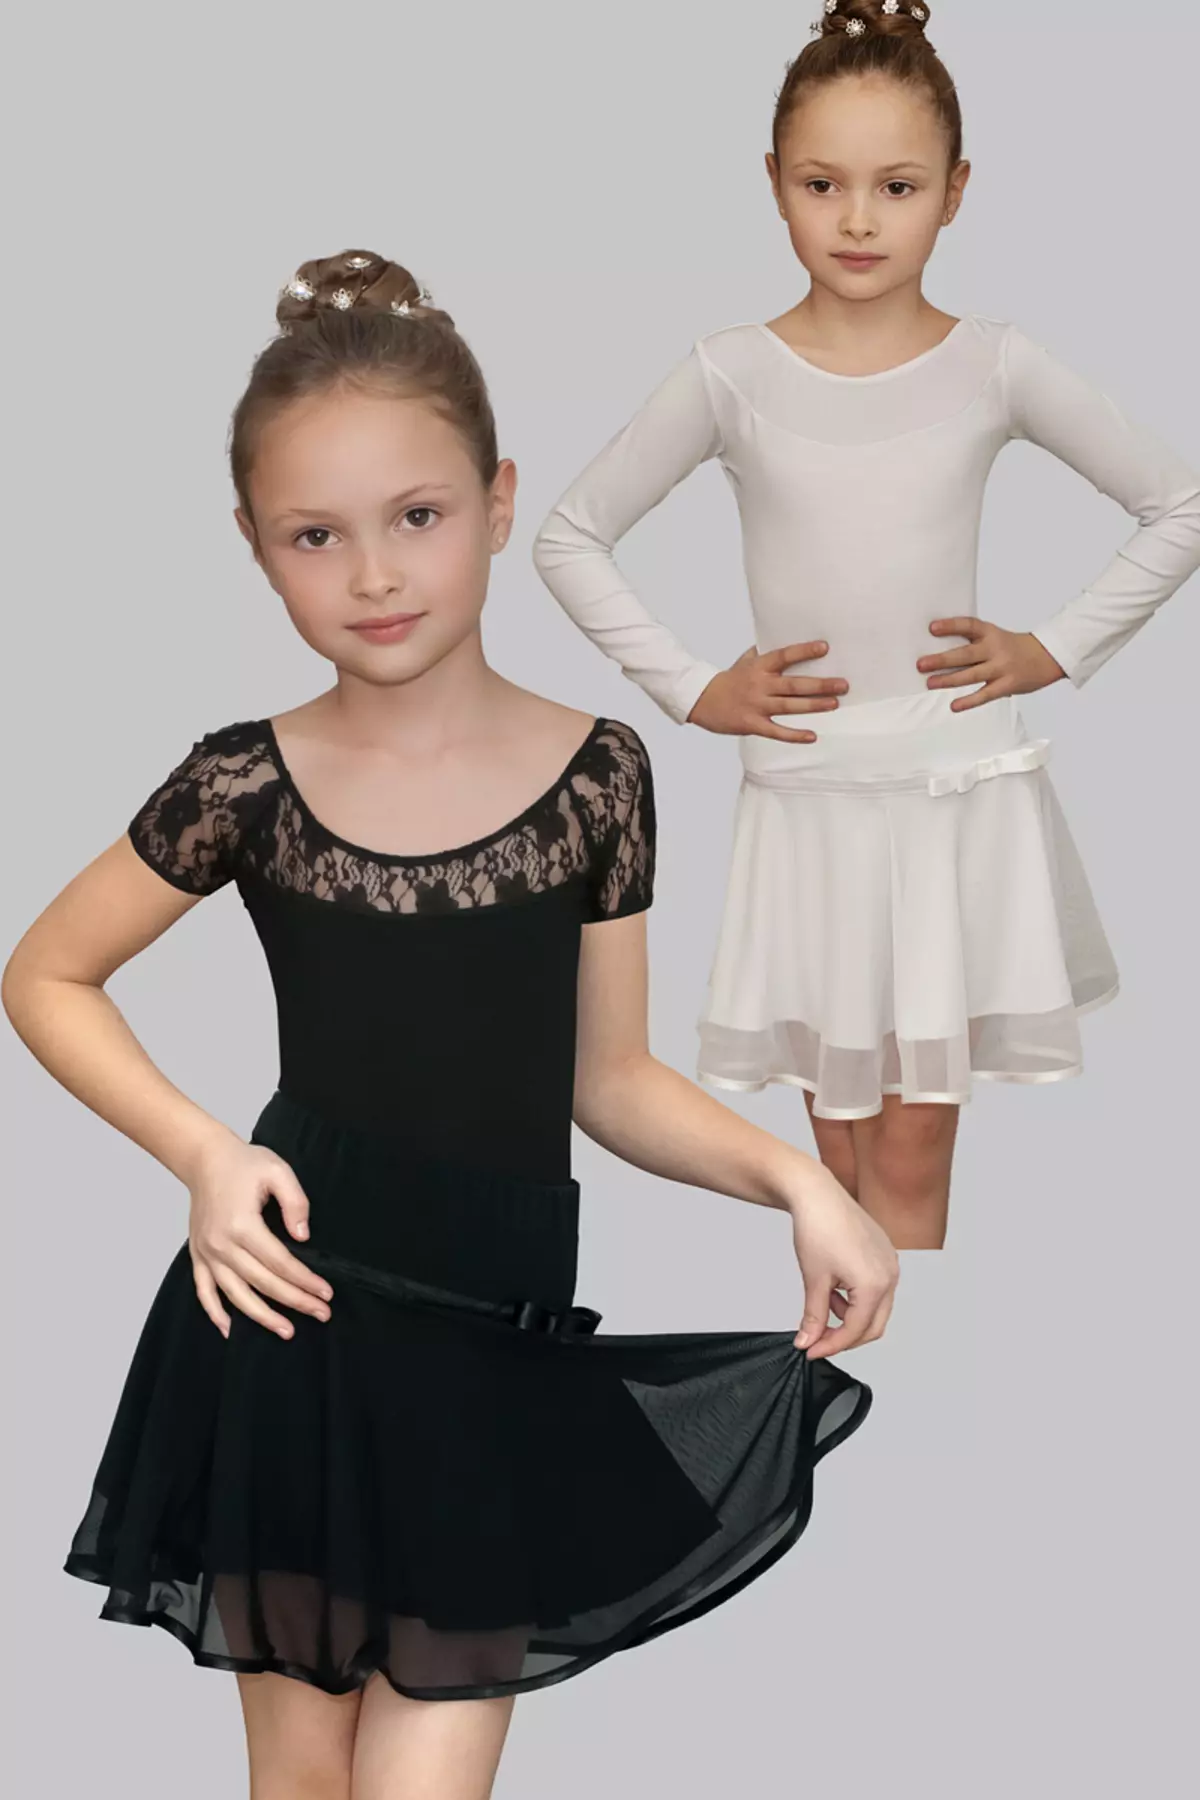 Swimsuit infantil para bailar con saia (45 fotos): Modelos de baile para nenas 13495_9